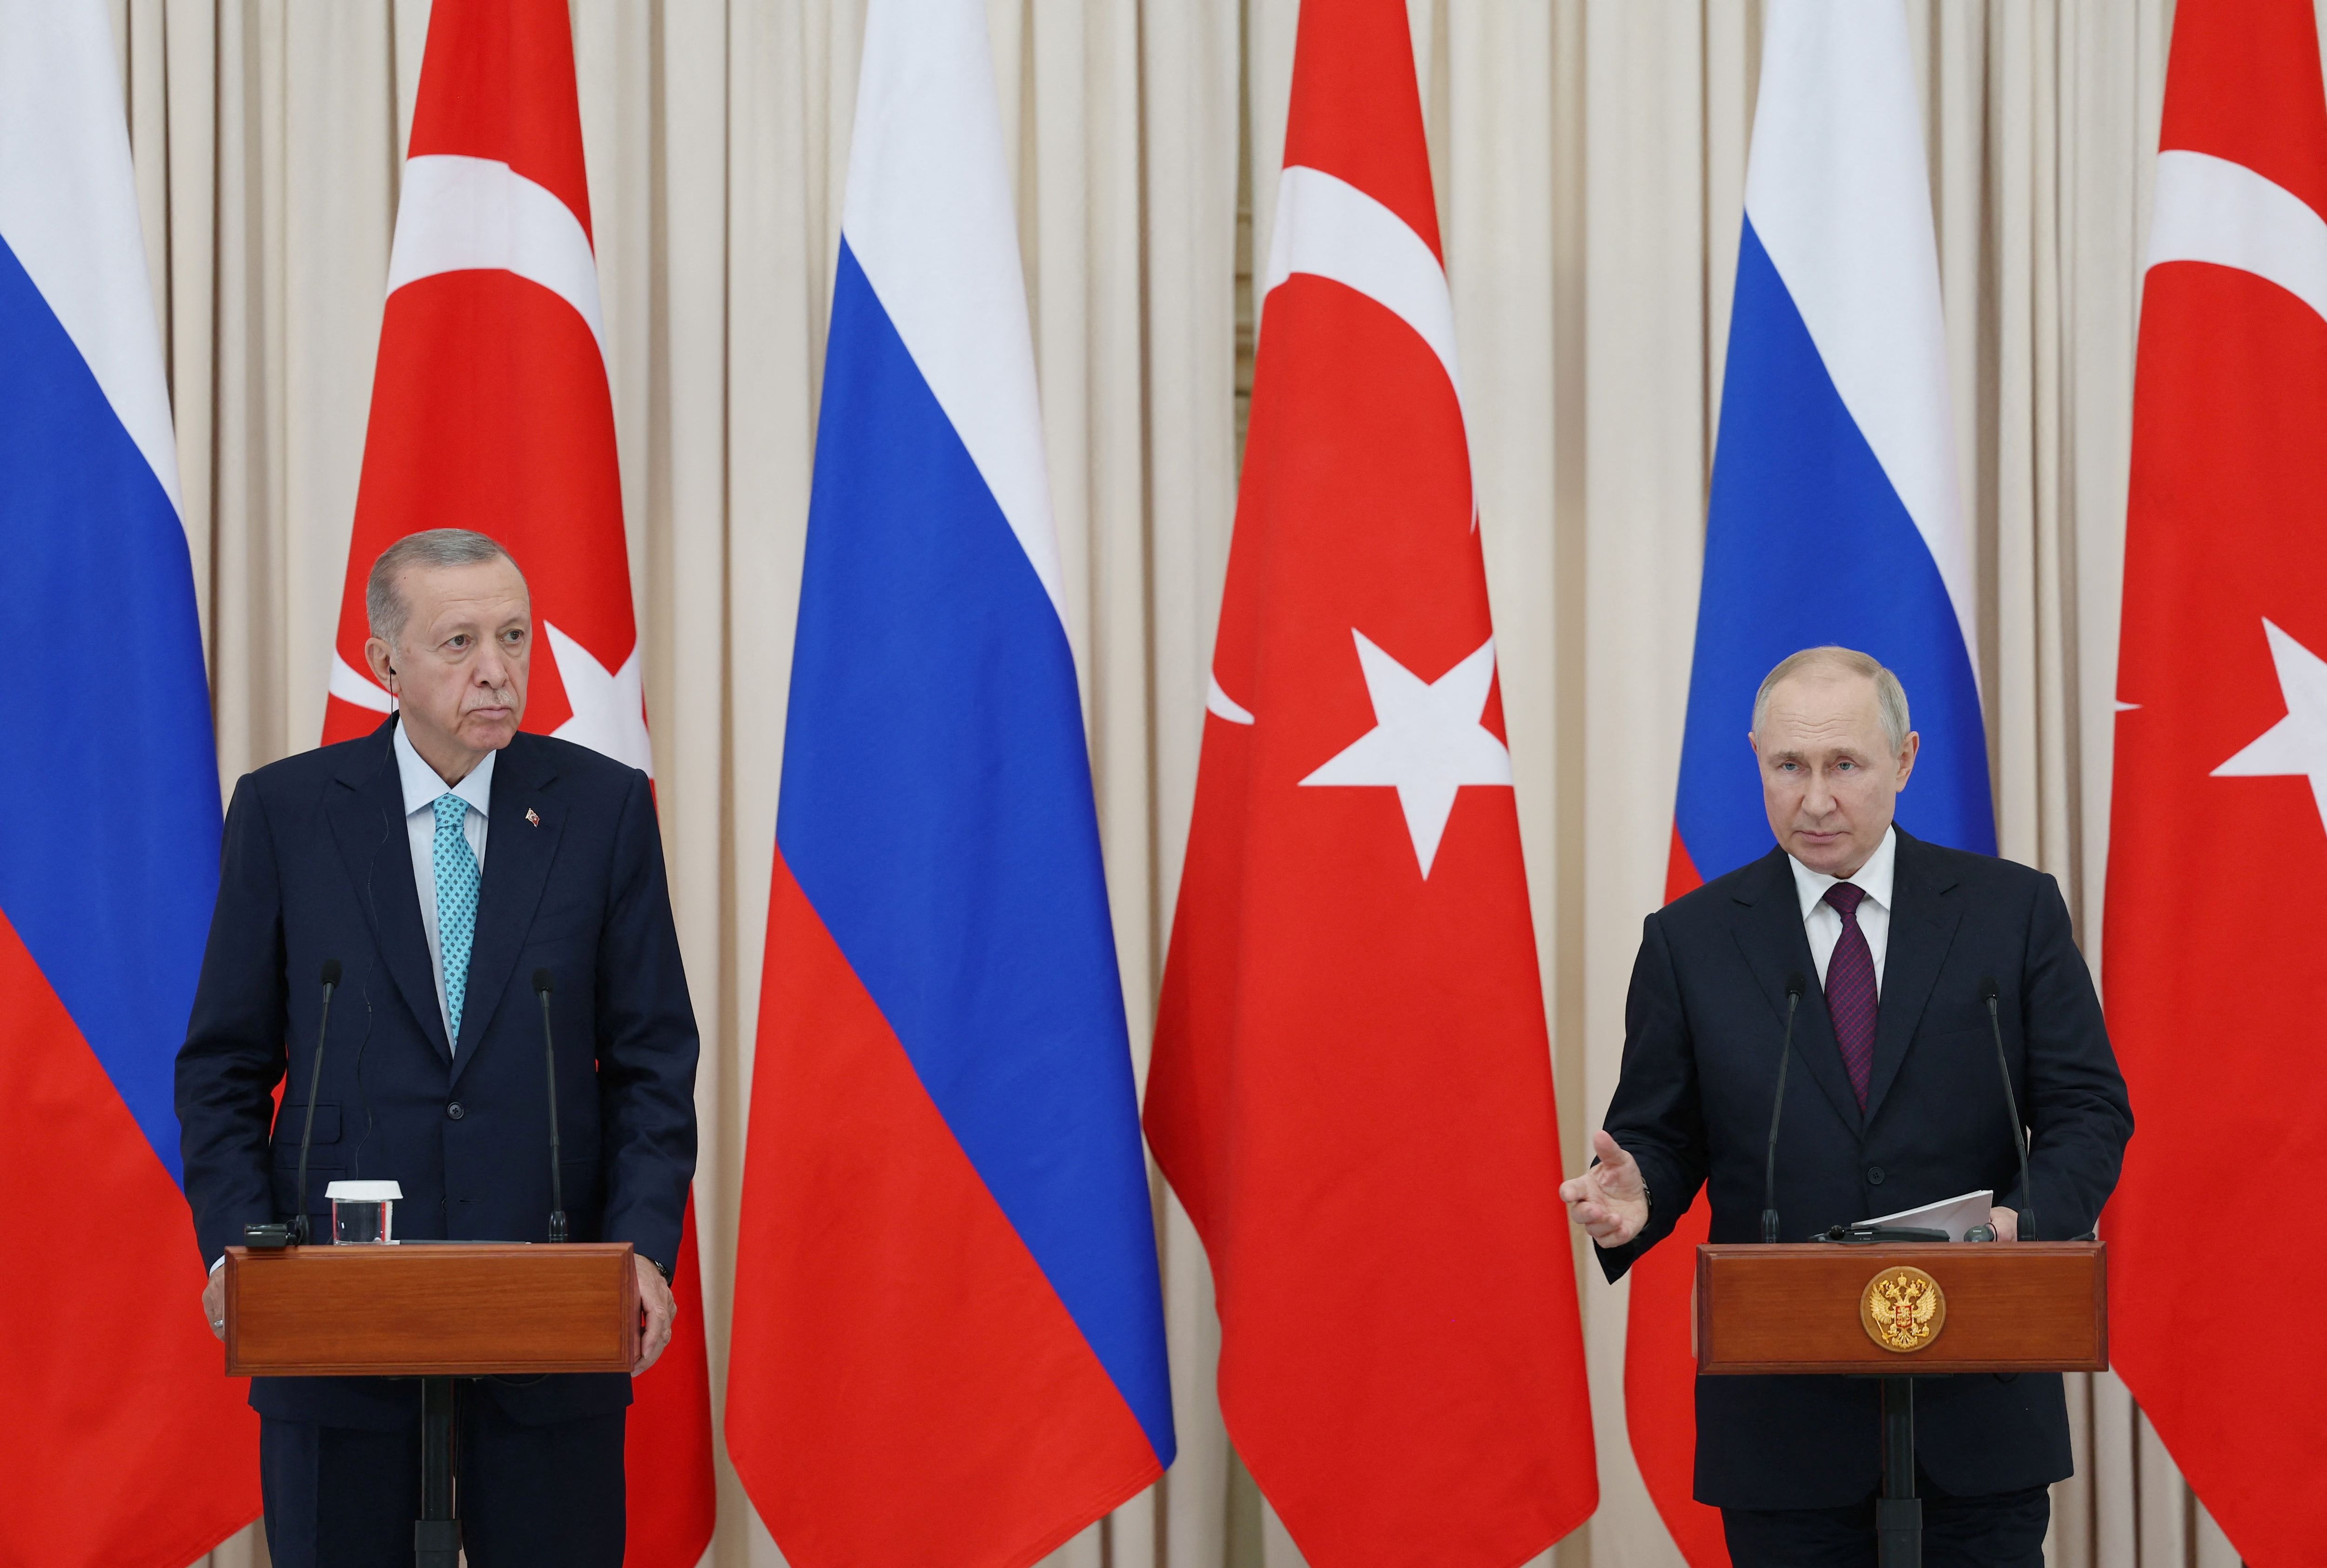 Durante la conferencia que brindó junto al presidente turco, Recep Tayyip Erdogan, Vladimir Putin dijo que la contraofensiva ucraniana es un fracaso (Turkish Presidential Press Office/Handout via REUTERS)